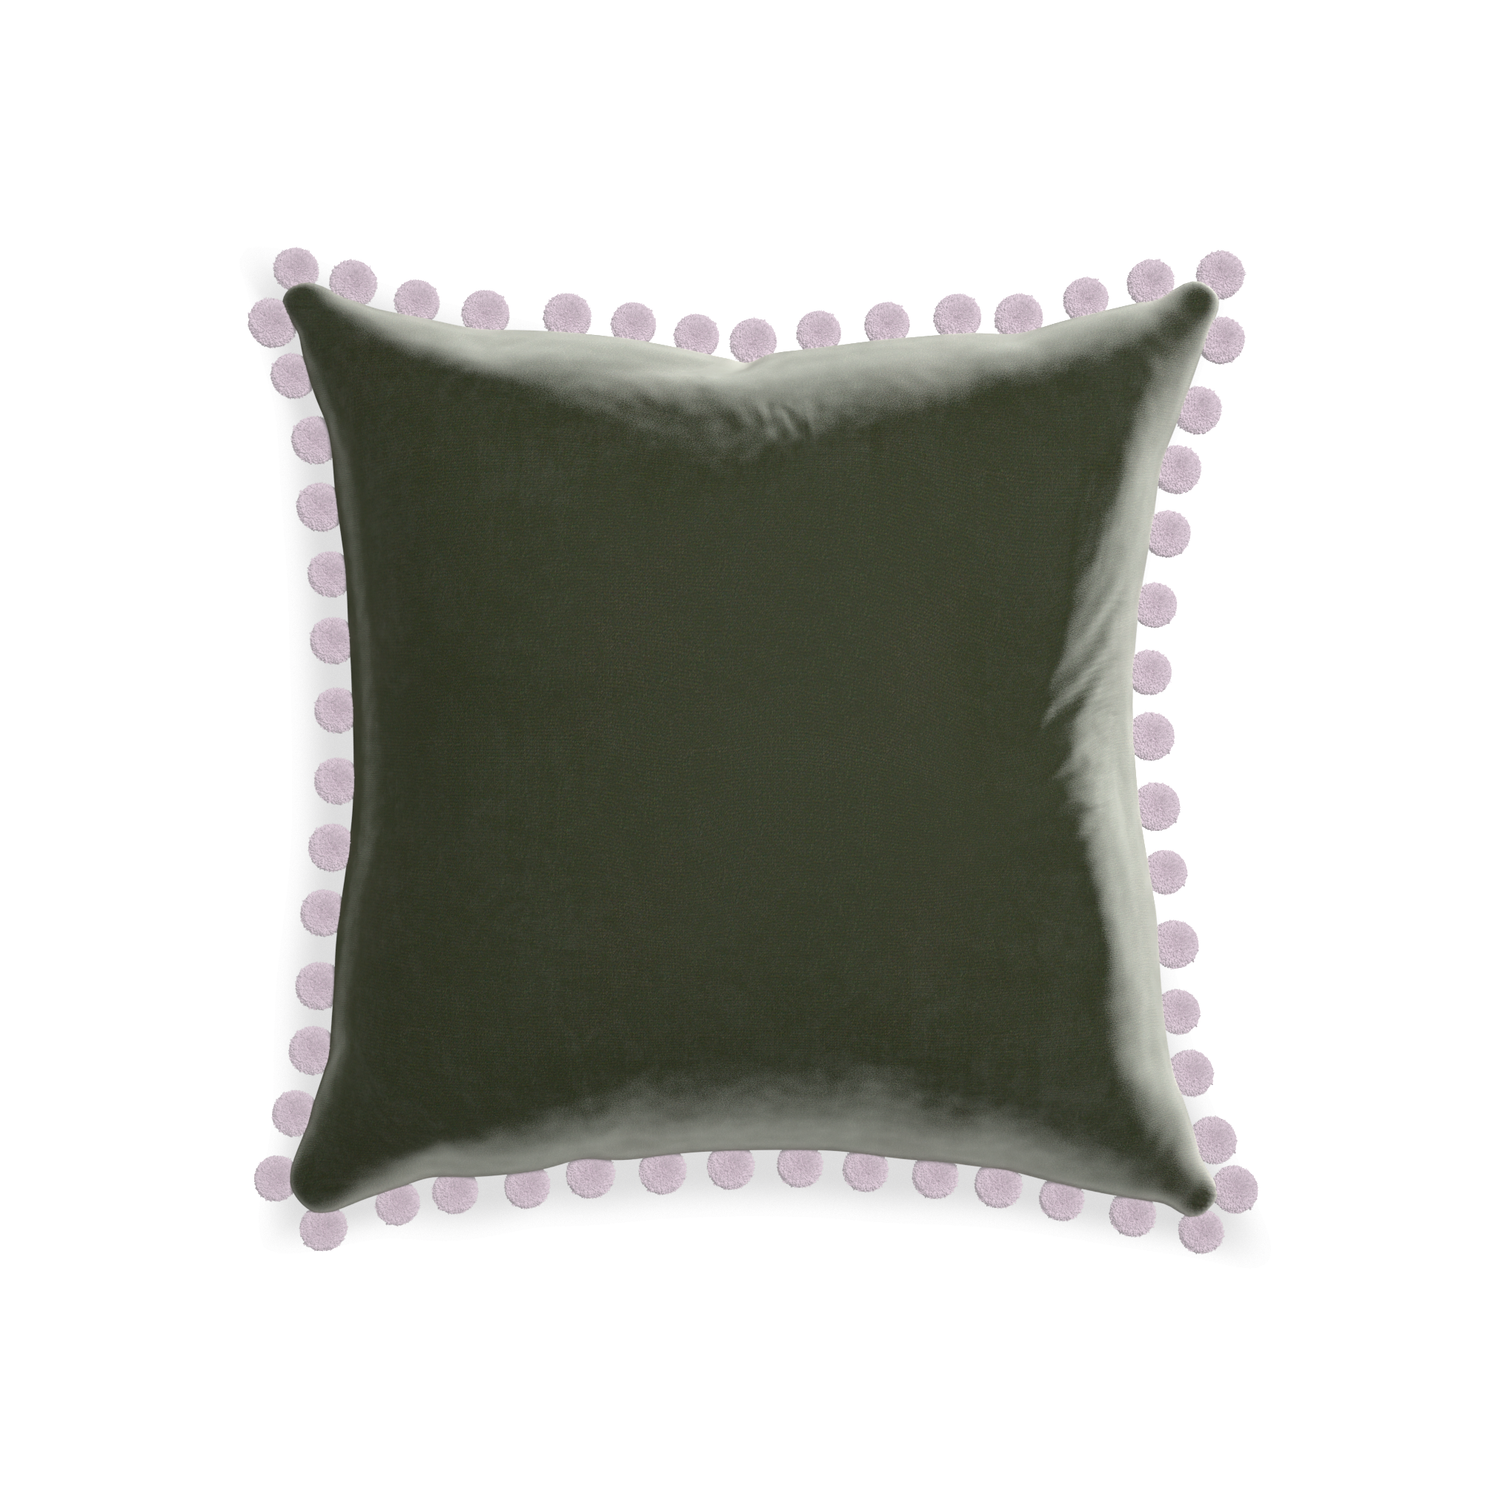 20-square fern velvet custom pillow with l on white background